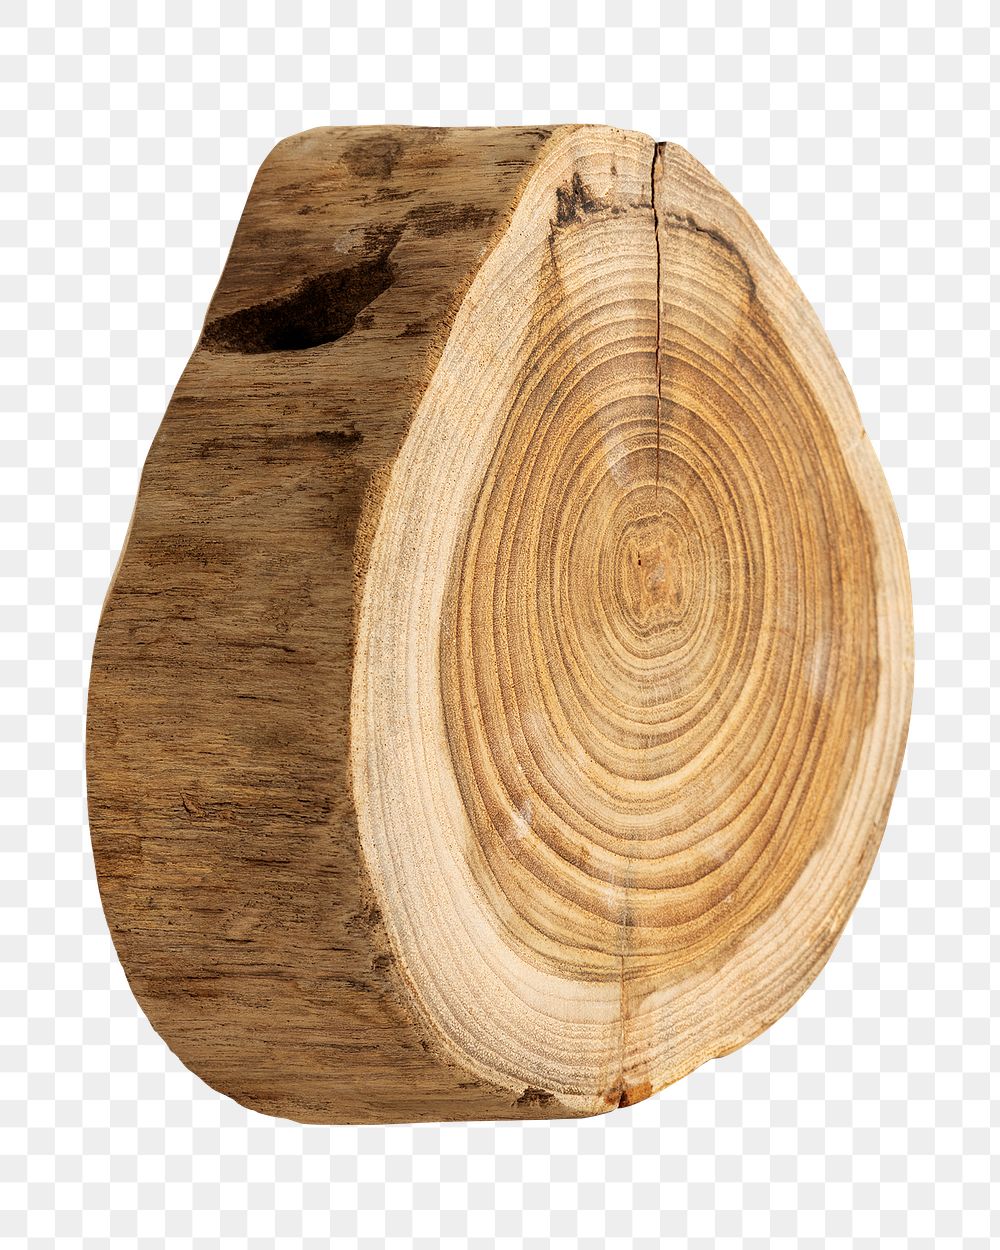 Single chopped wood slice design element